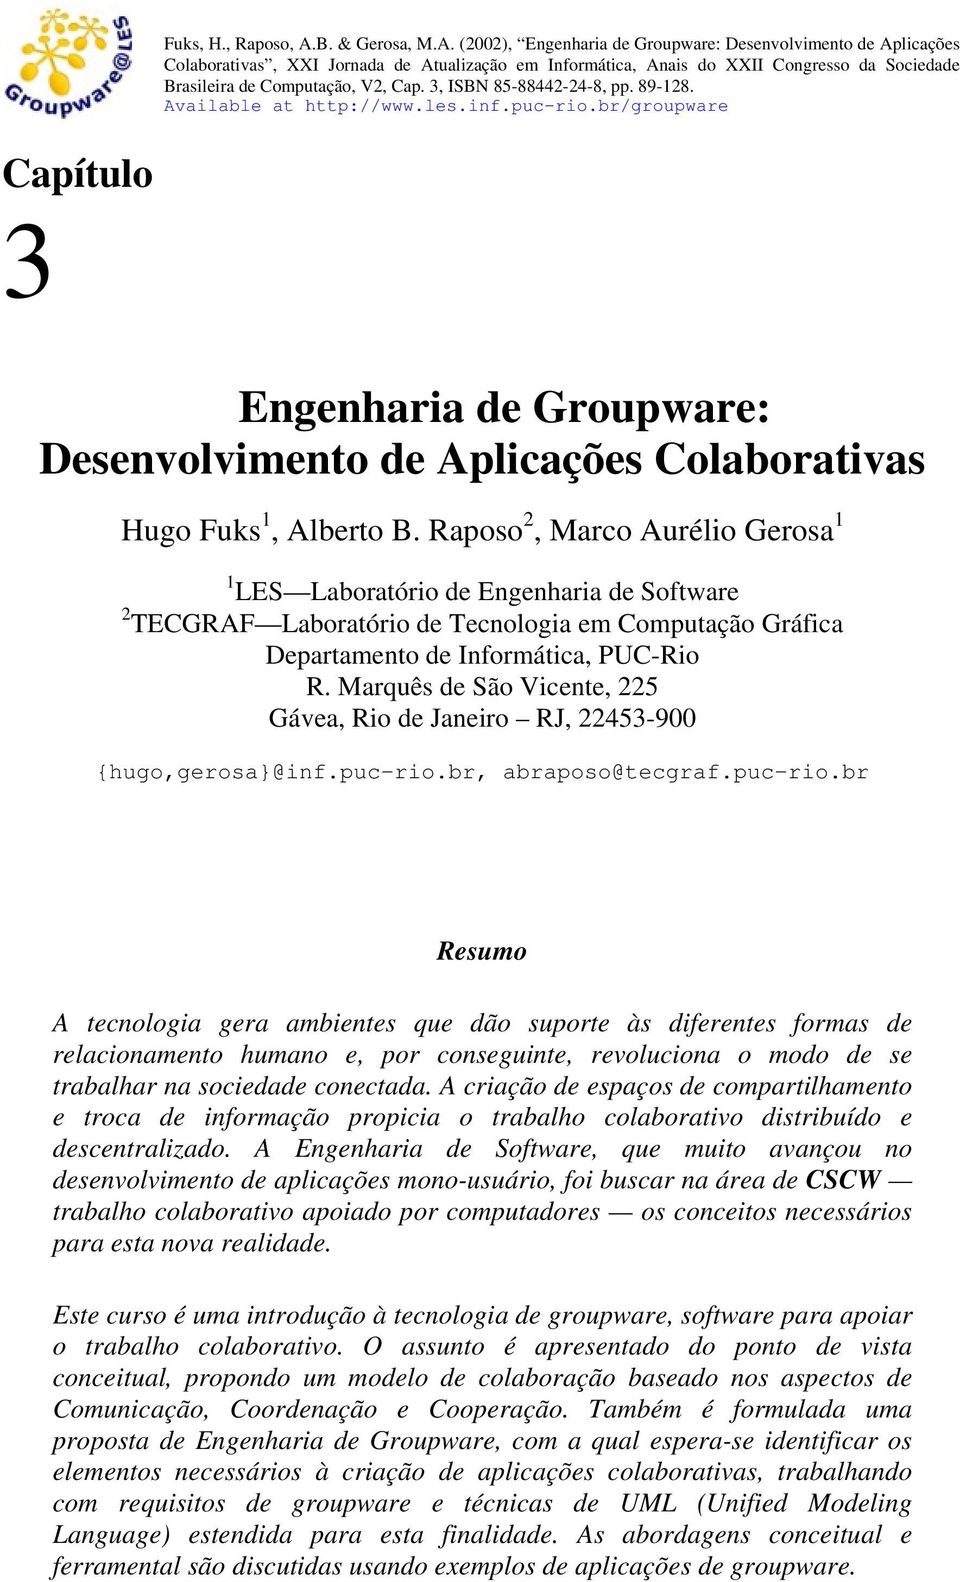 (2002), Engenharia de Groupware: Desenvolvimento de Aplicações Colaborativas, XXI Jornada de Atualização em Informática, Anais do XXII Congresso da Sociedade Brasileira de Computação, V2, Cap.